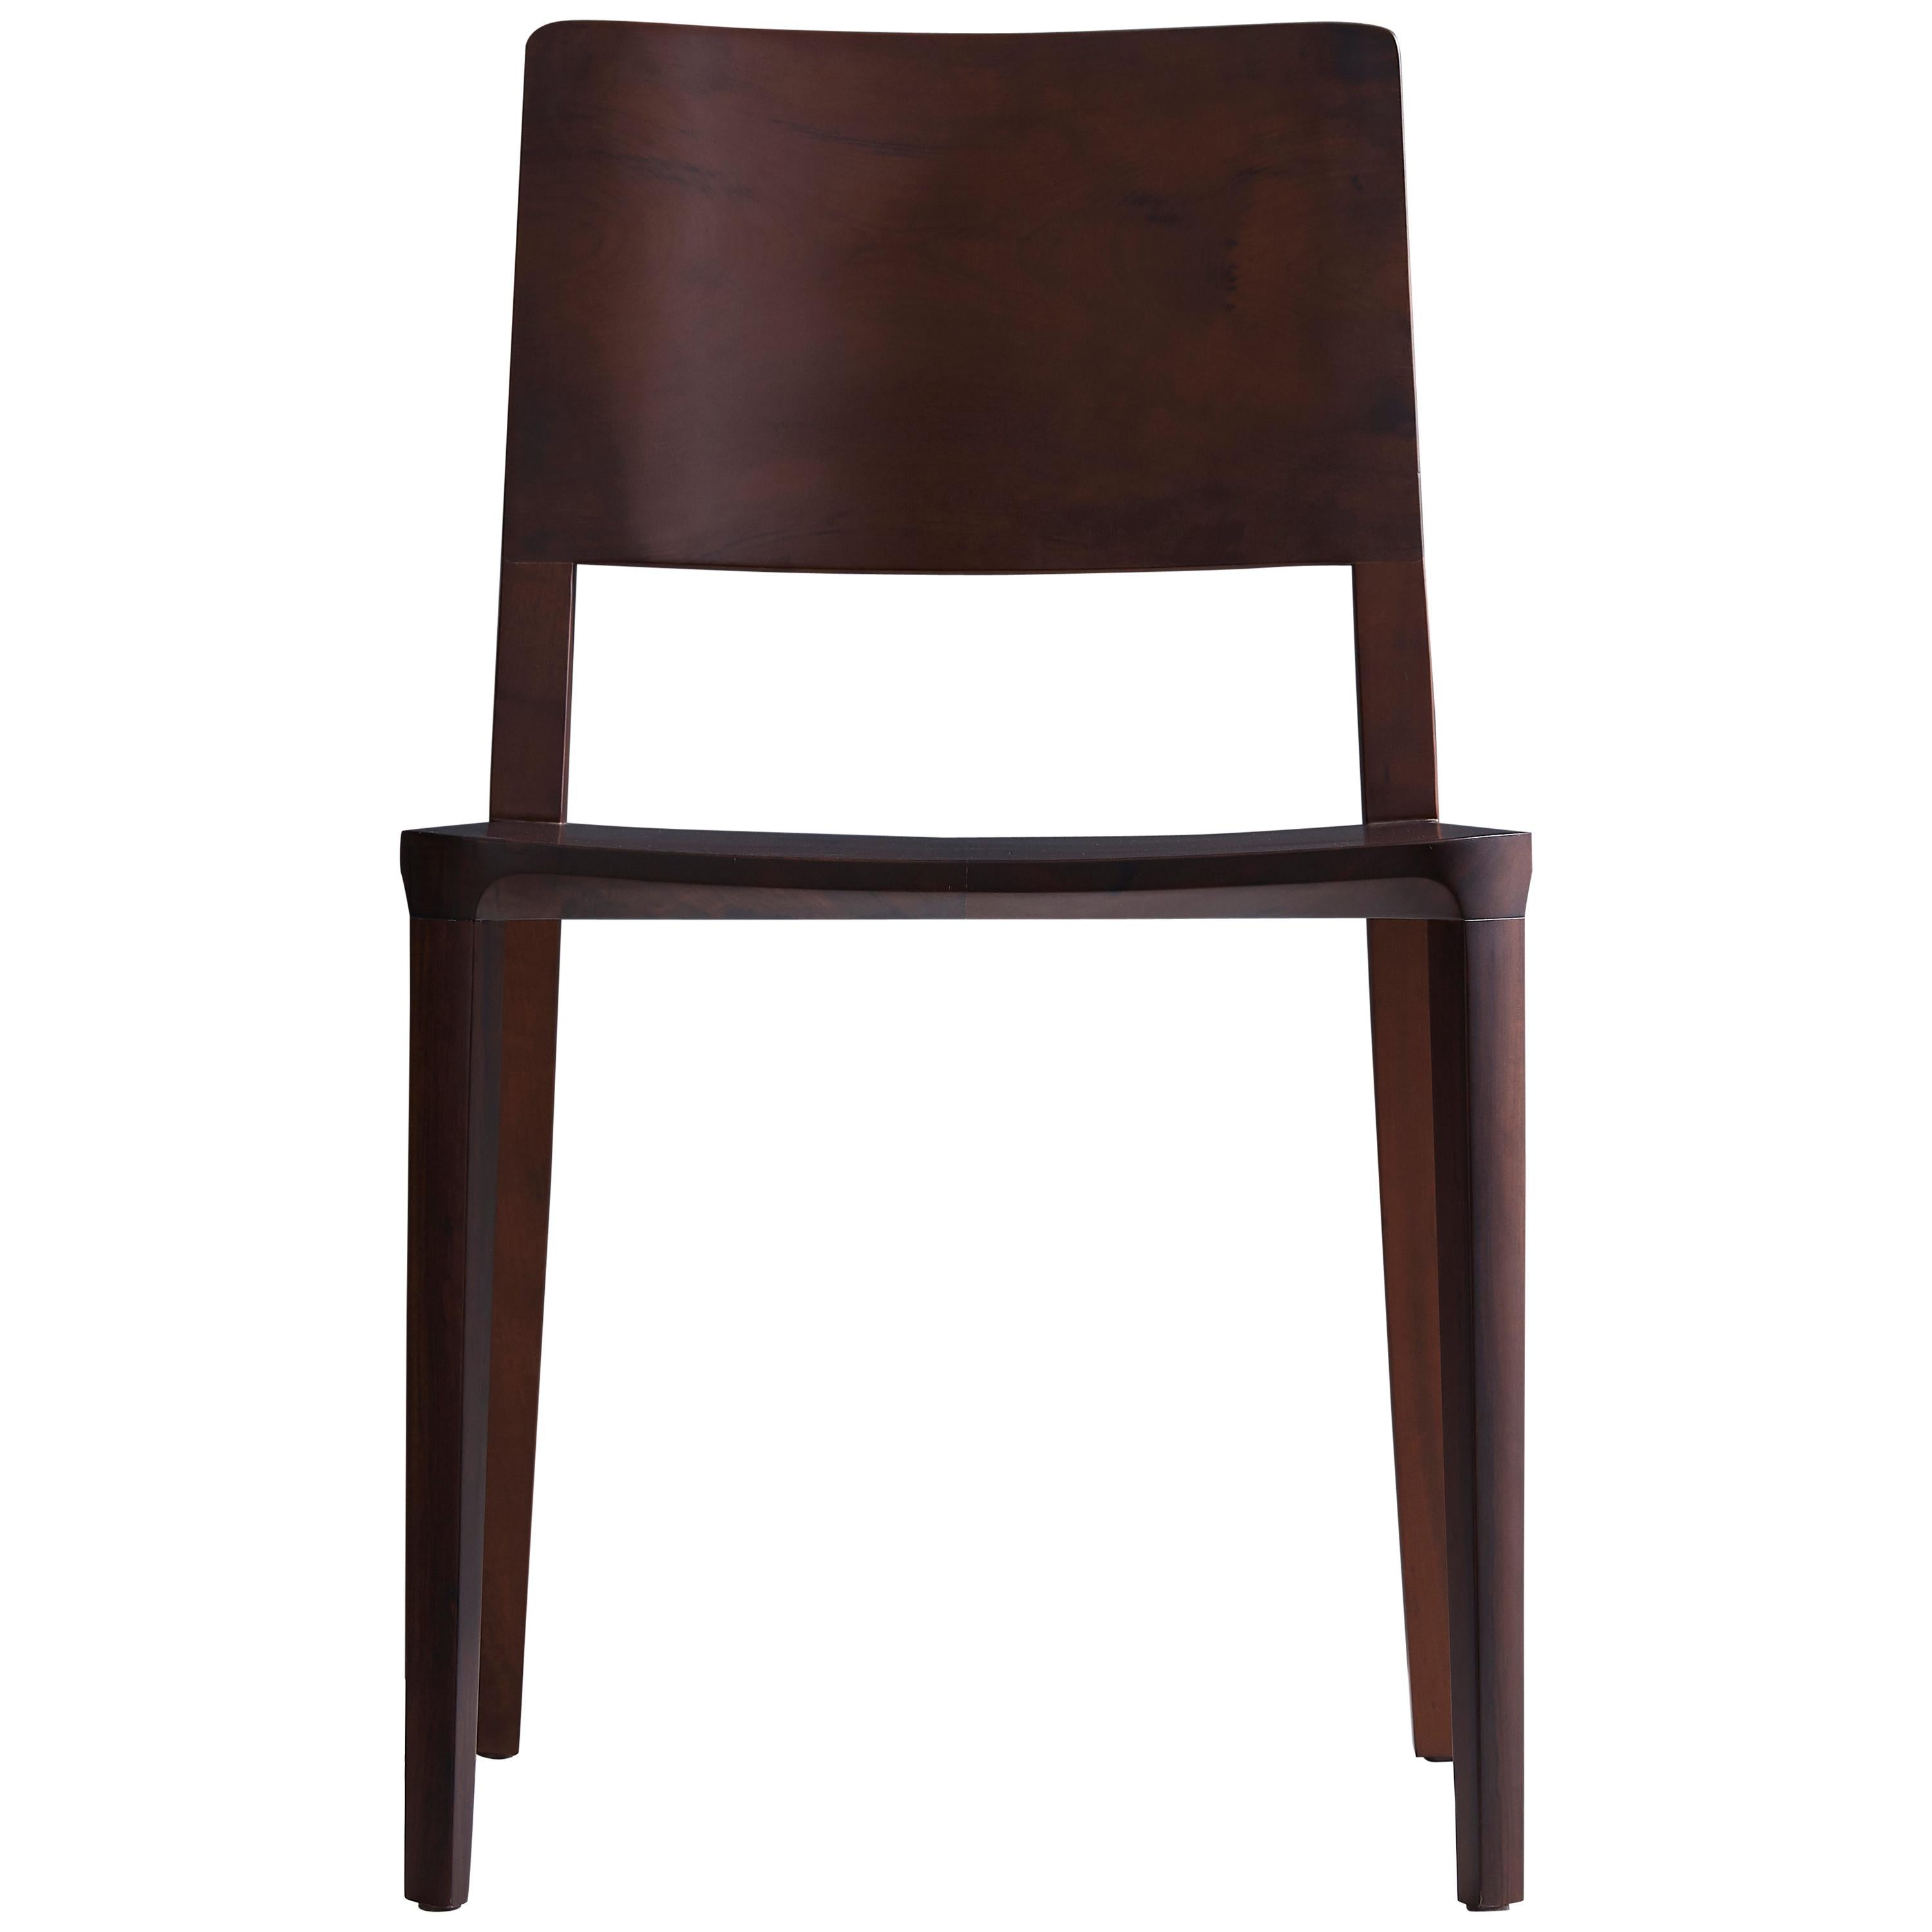 Collection Evo Chair.

Notre collection Evo est basée sur la fusion harmonique entre les formes géométriques et l'interprétation moderne des archétypes du bois. 

Tous les éléments qui composent la chaise sont conçus avec précision pour